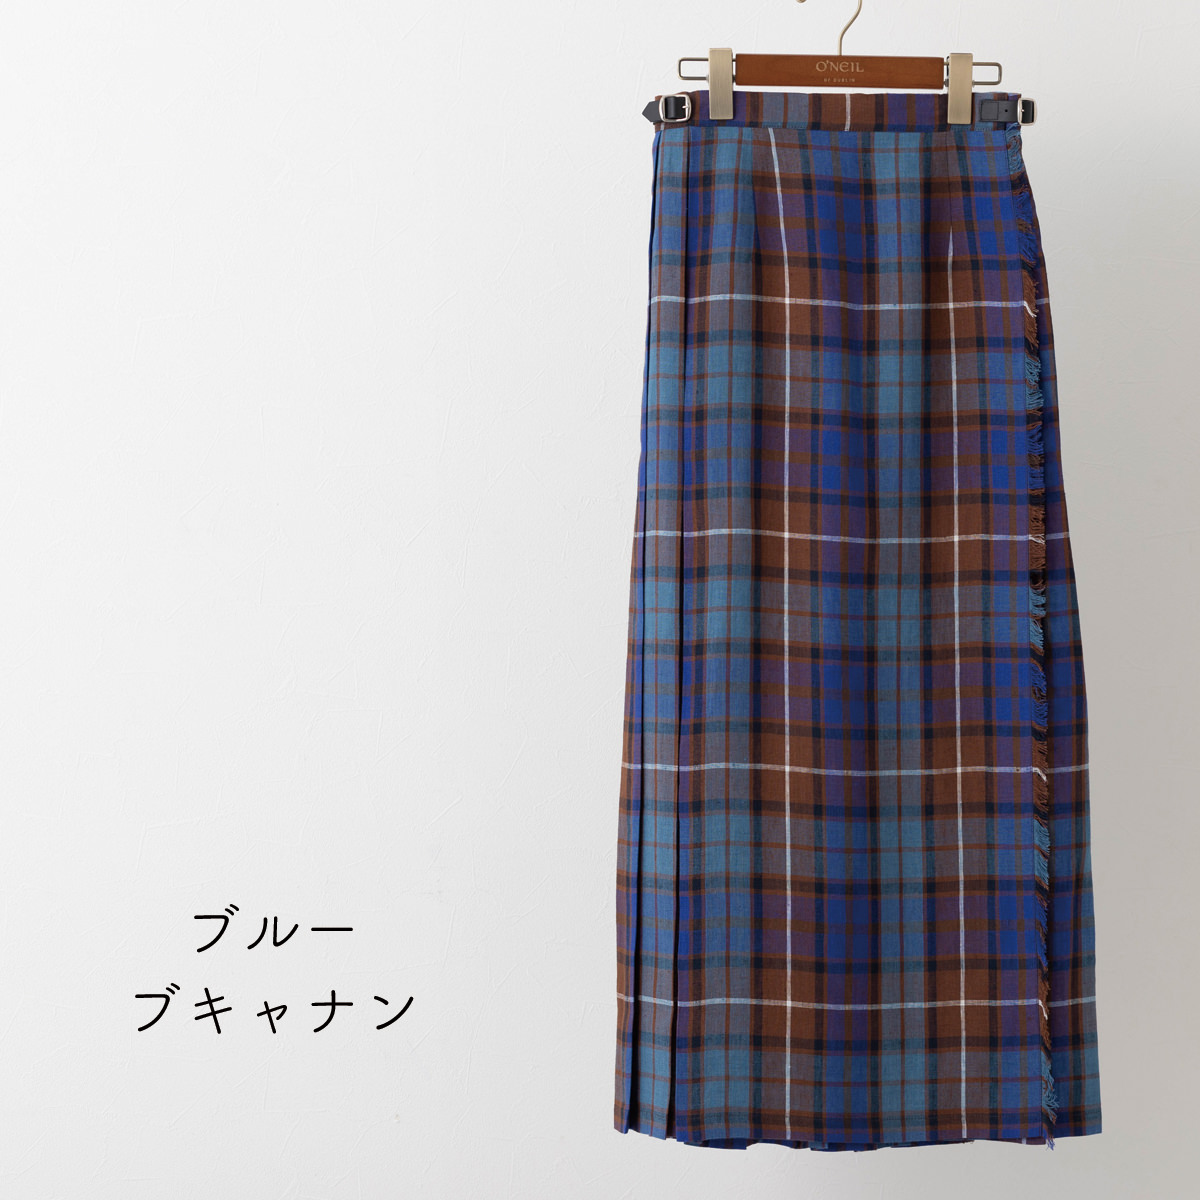 オニールオブダブリン ロングスカート O'NEIL OF DUBLIN リネン100% キルト 90cm 22色 マキシ ロング丈 イージー  巻きスカート アイルランド製 ラップスカート